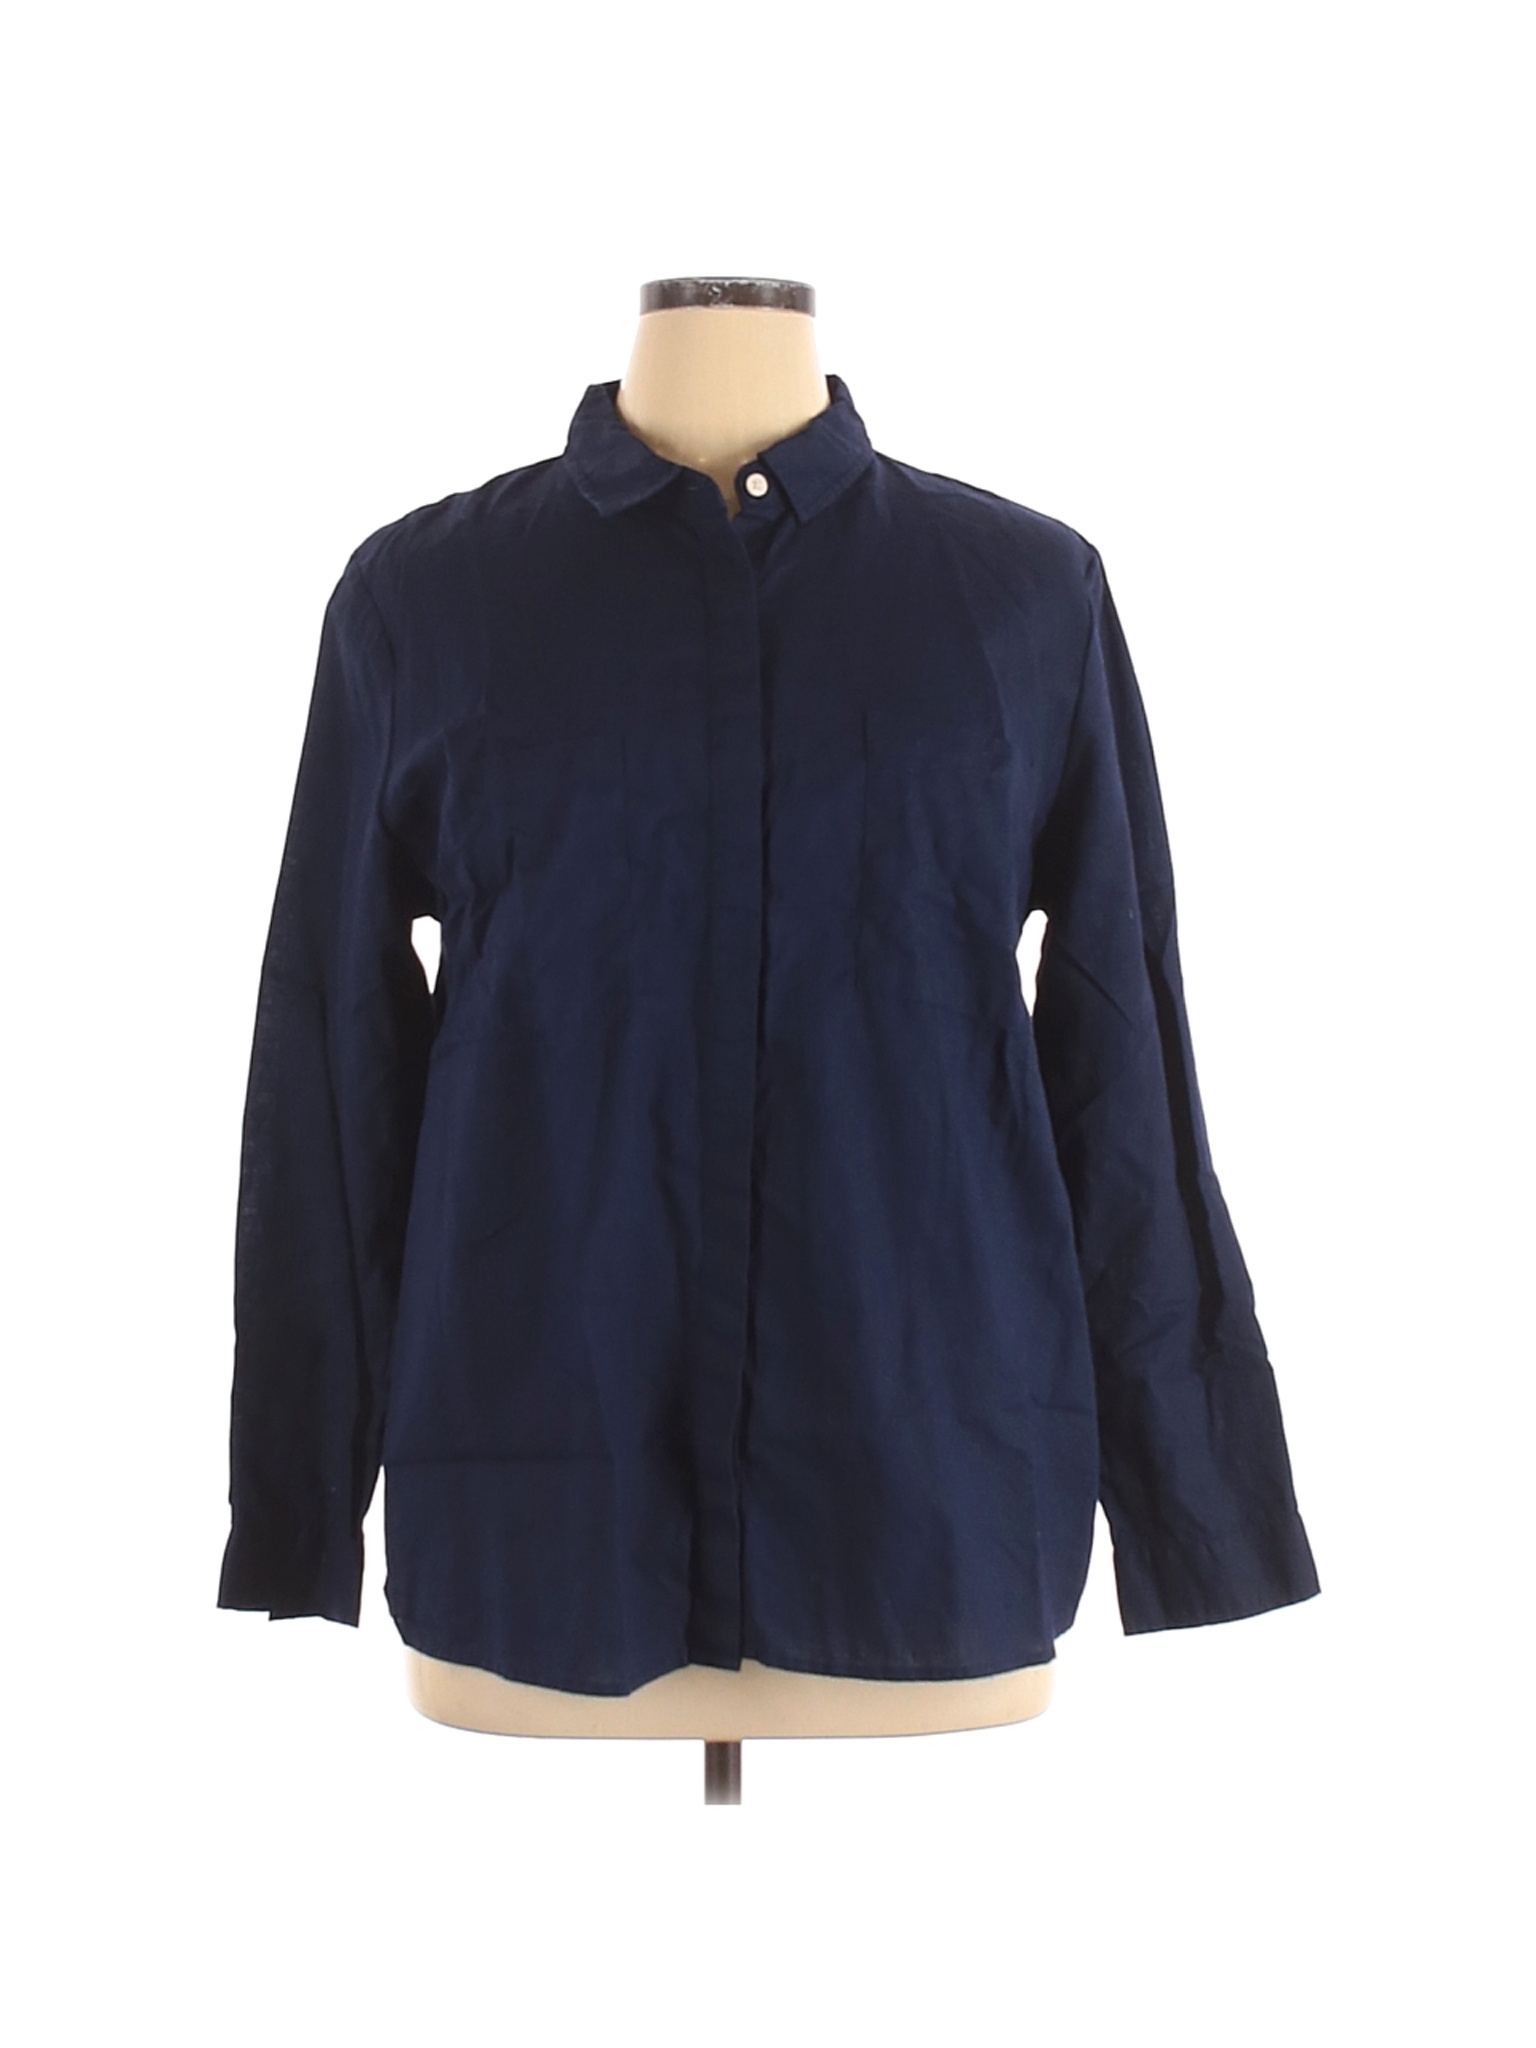 Alexander Jordan Women Blue Long Sleeve Button-Down Shirt 1X Plus | eBay